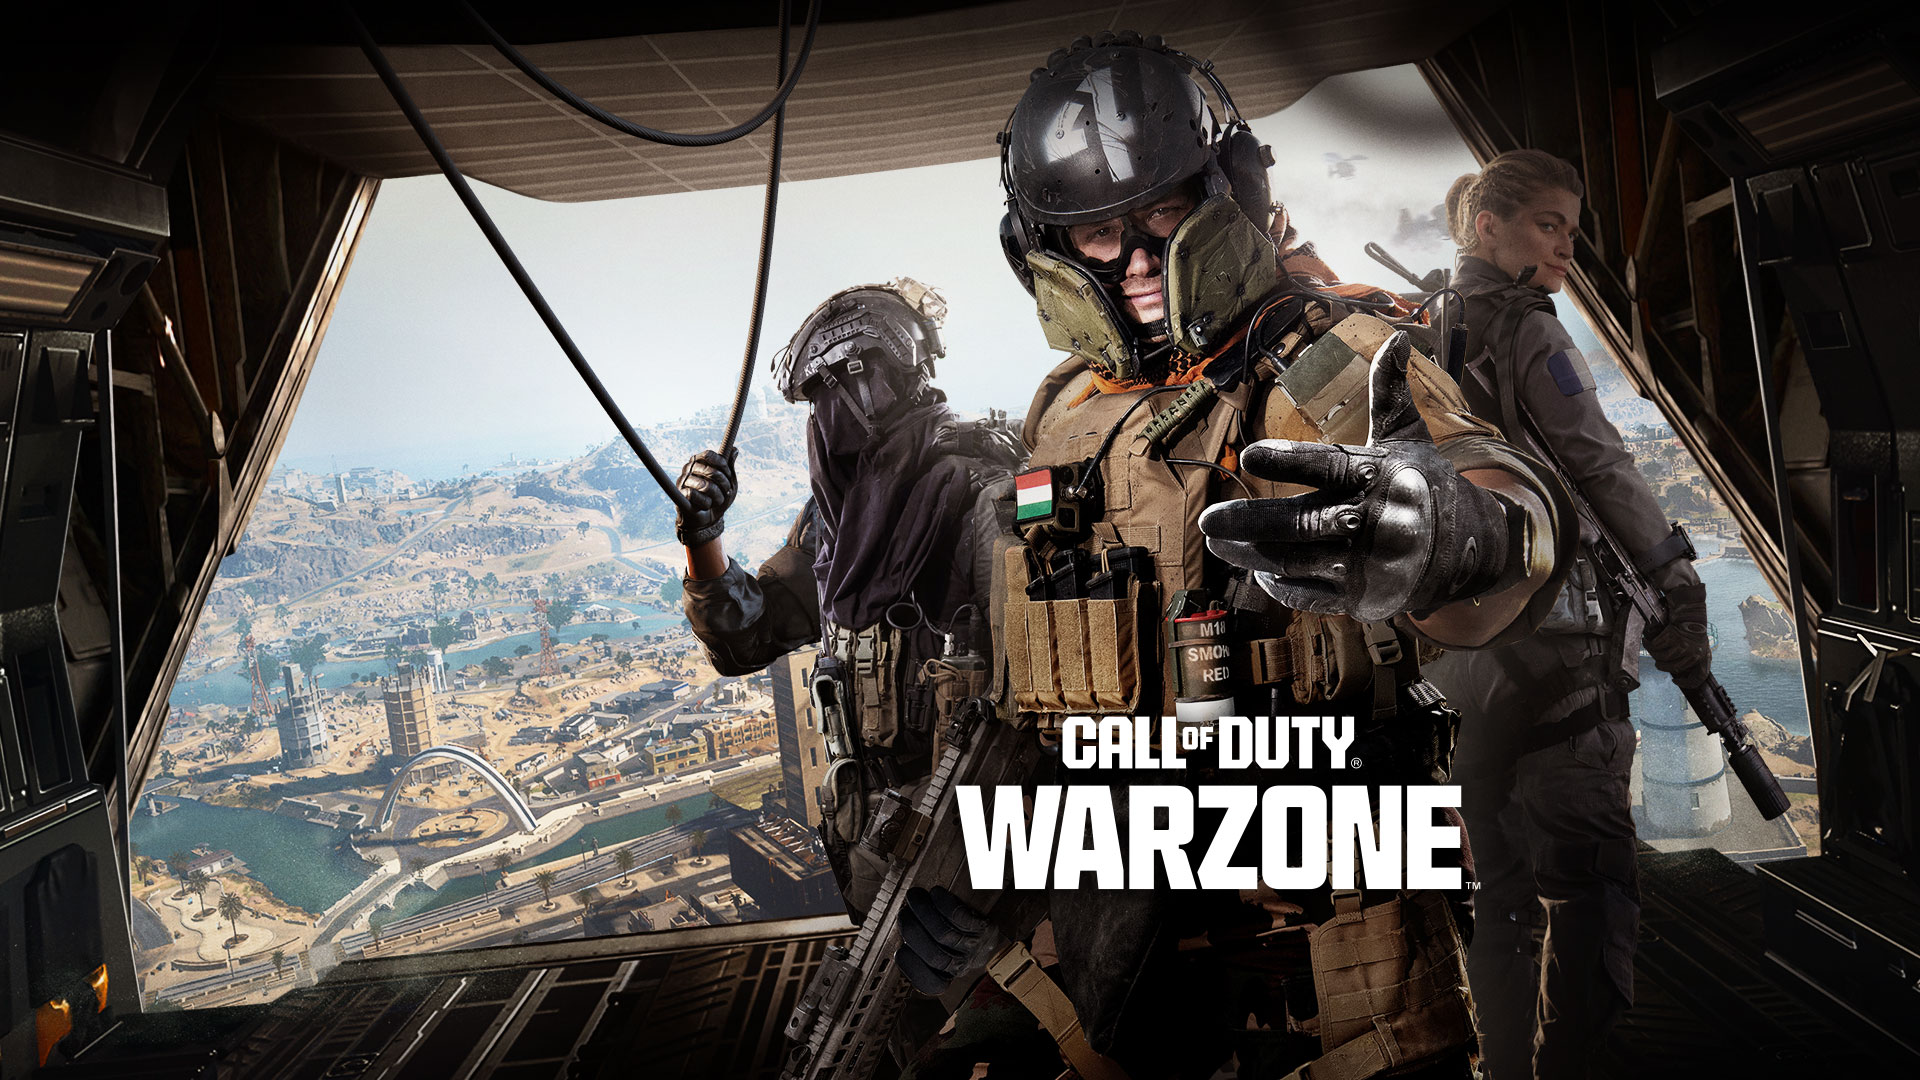 Call of Duty Warzone, en trio av operatører står bak et transportfly og tar kontakt for å invitere deg til å bli med på handlingen.